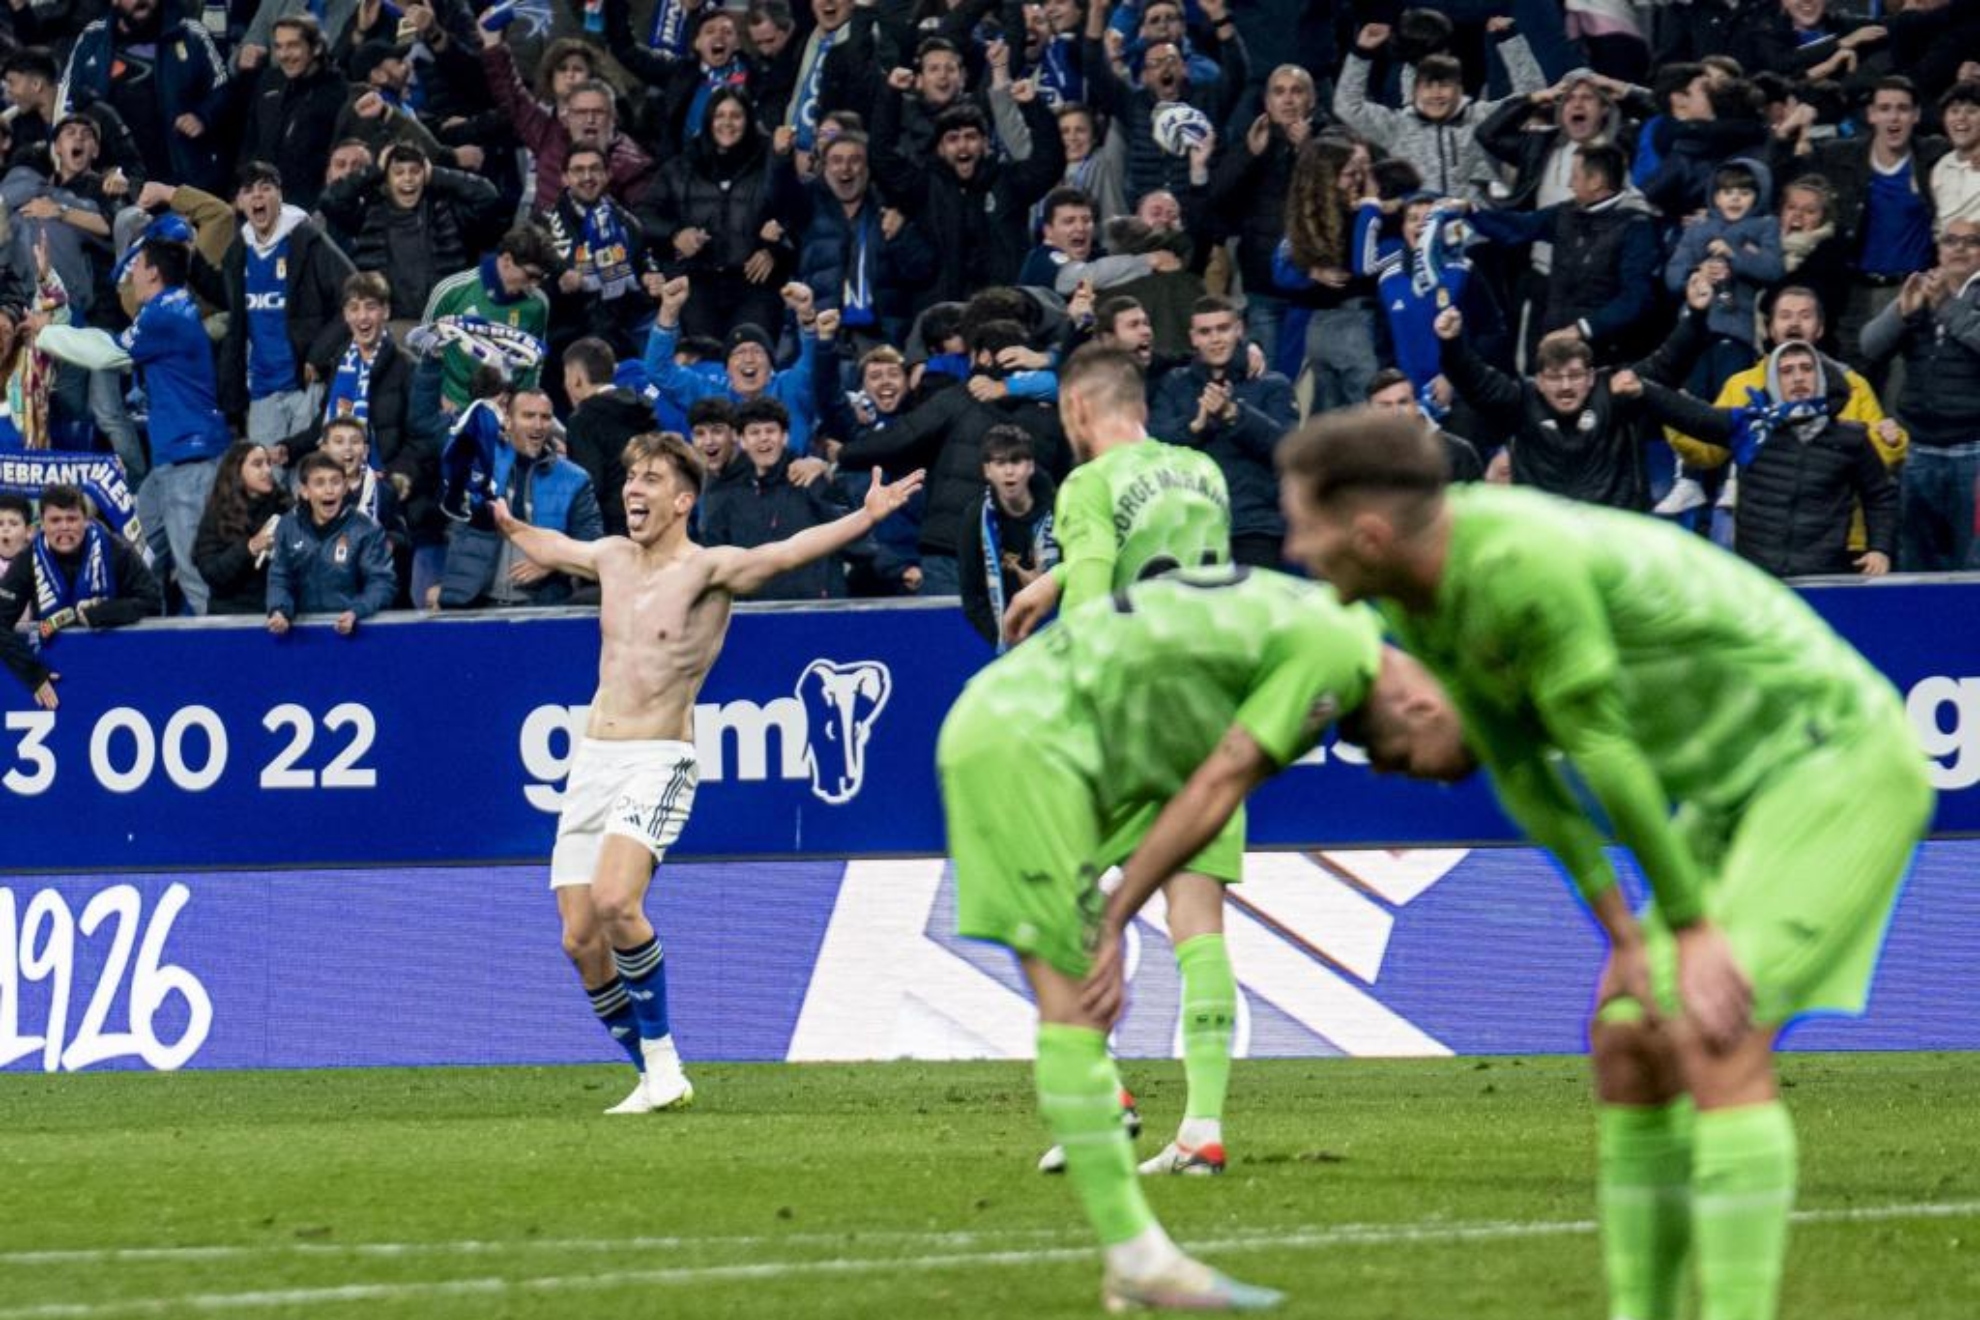 Paulino celebra sin la camiseta el gol del triunfo ante la decepción de los jugadores del Lega